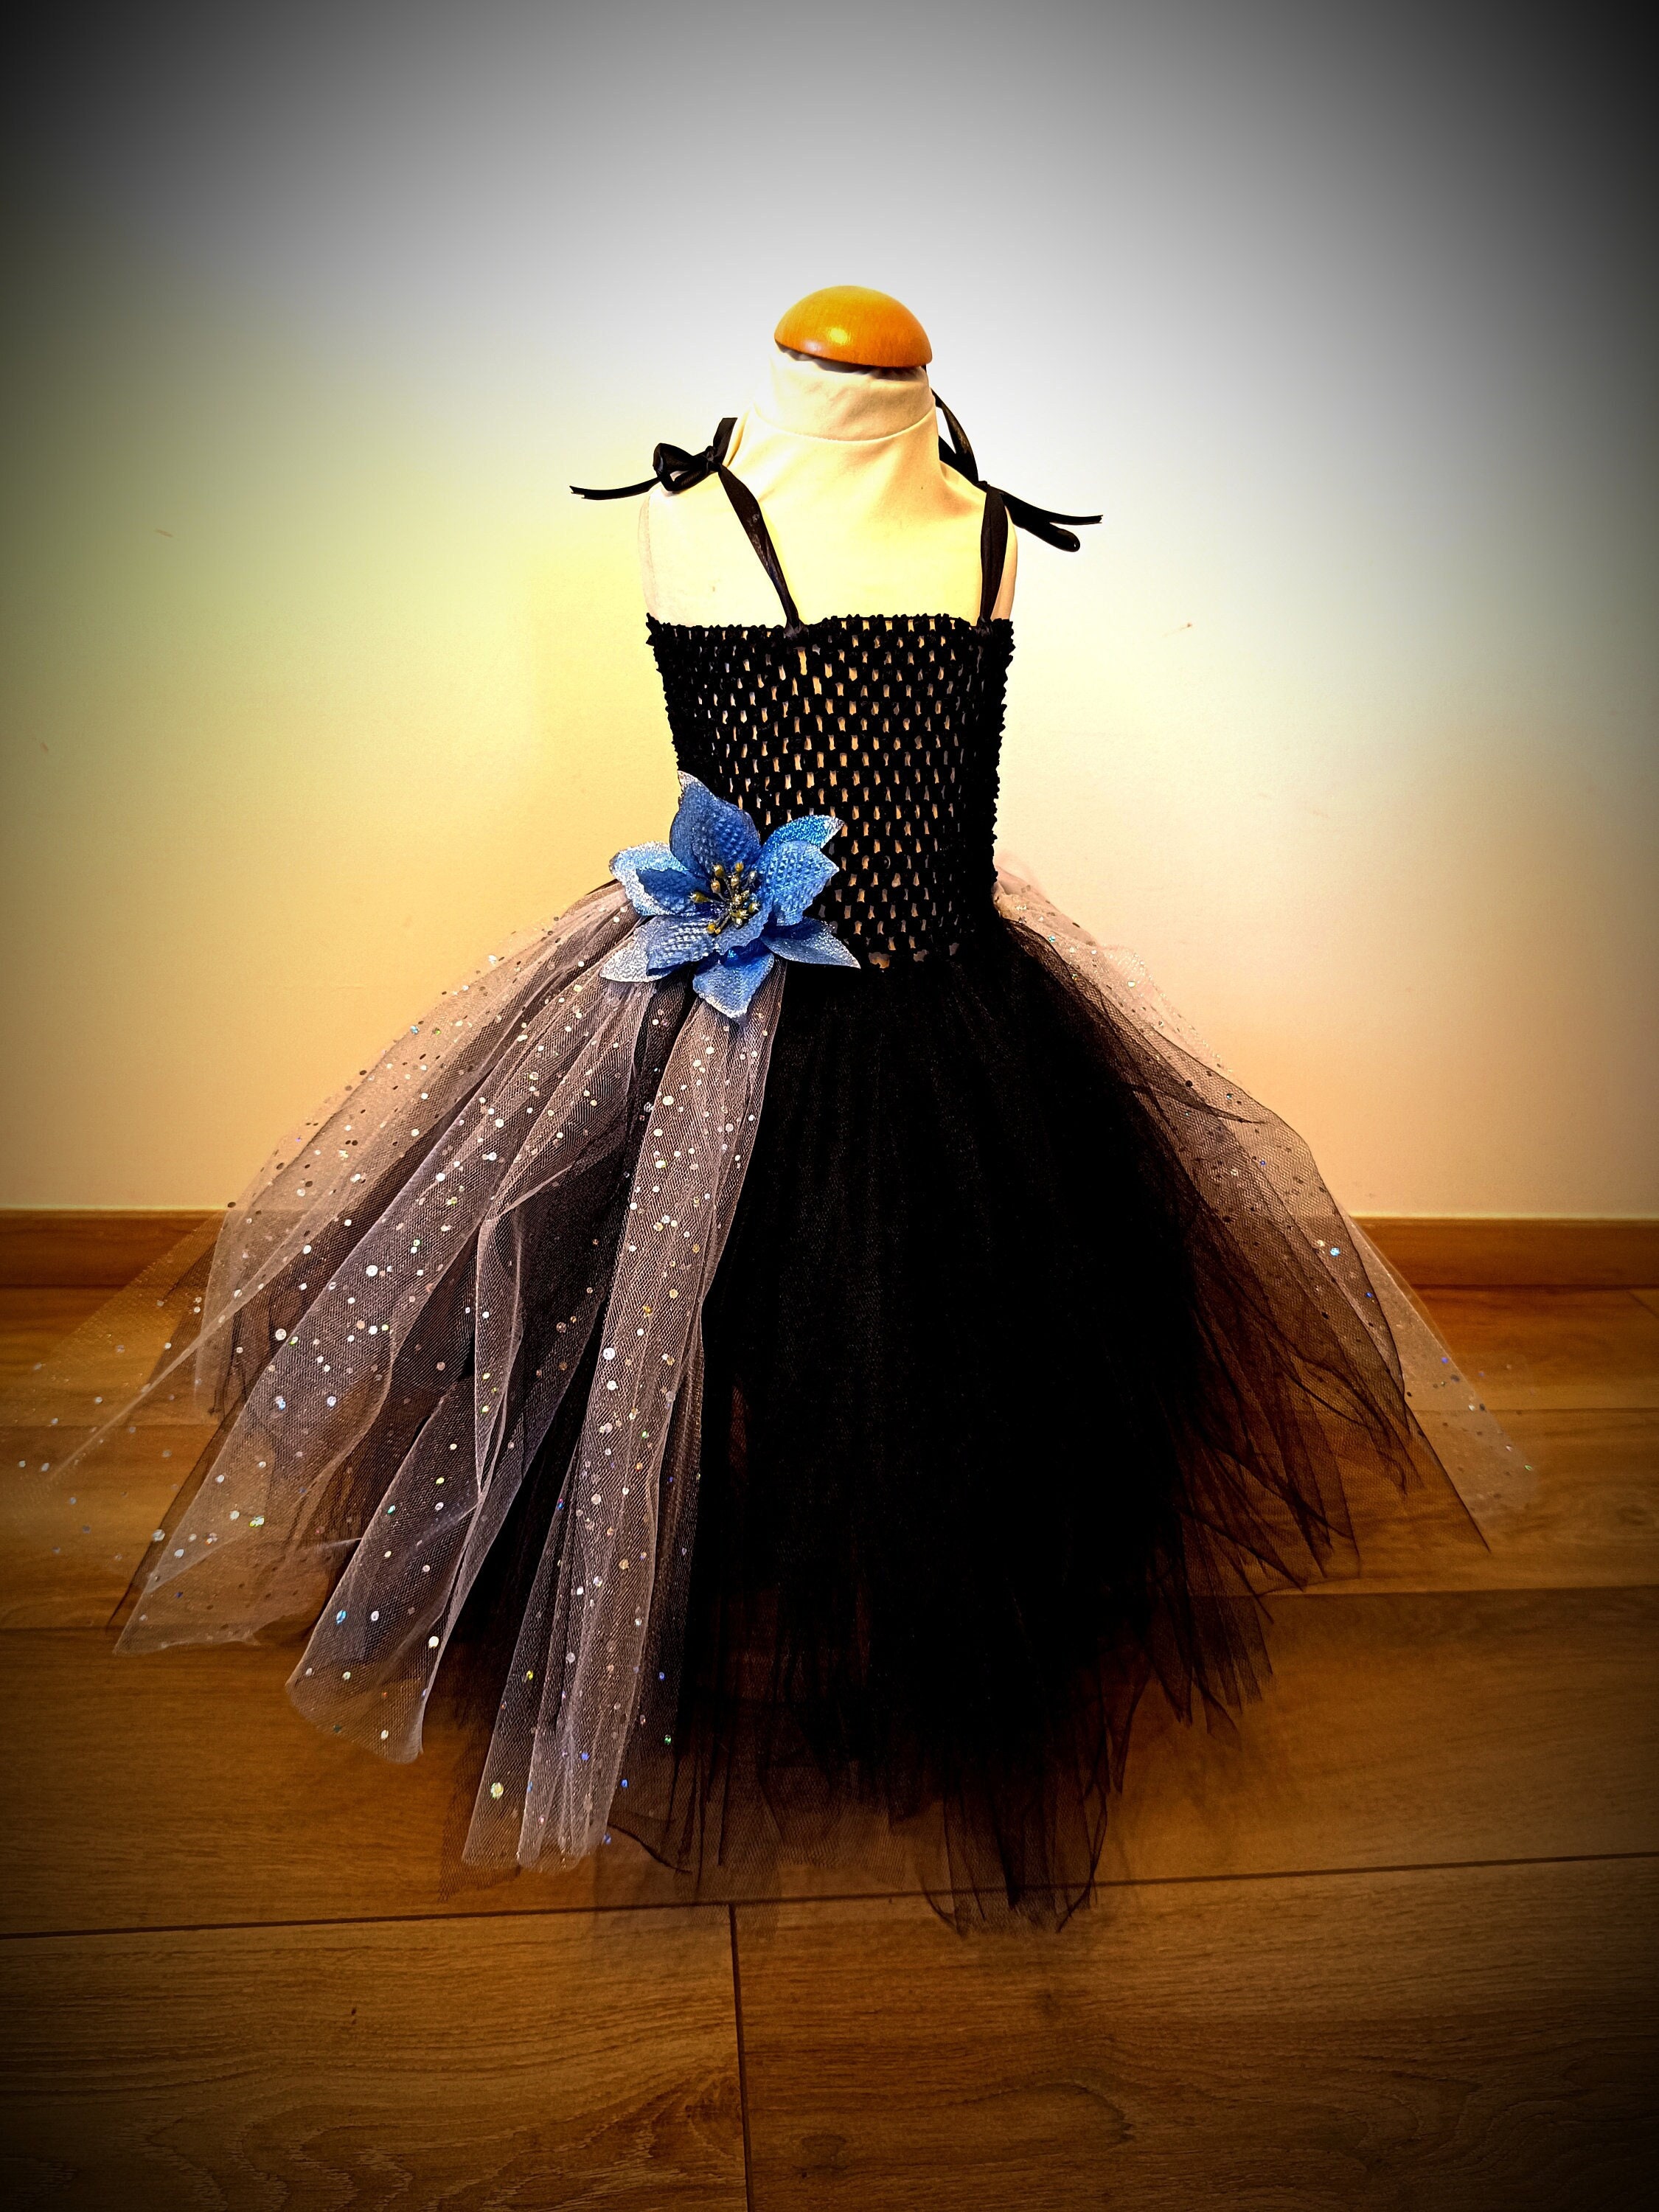 Jupe tutu fille fleur, jupe en tulle longue de cérémonie pour petite  princesse, couleurs au choix -  France